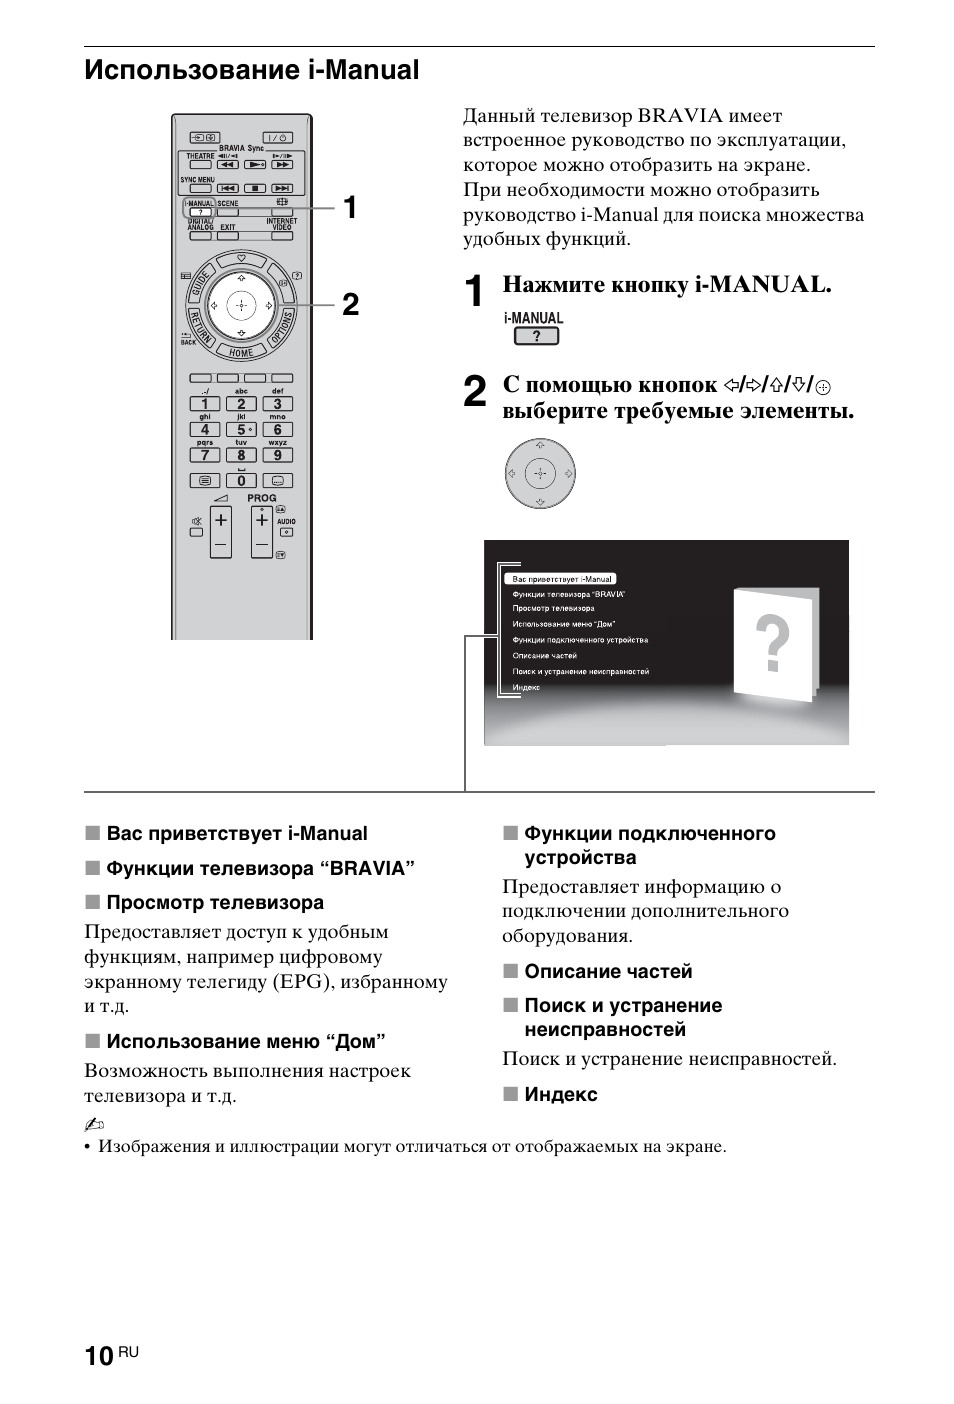 Использование i-manual | Инструкция по эксплуатации Sony KDL-40EX705 | Страница 202 / 214